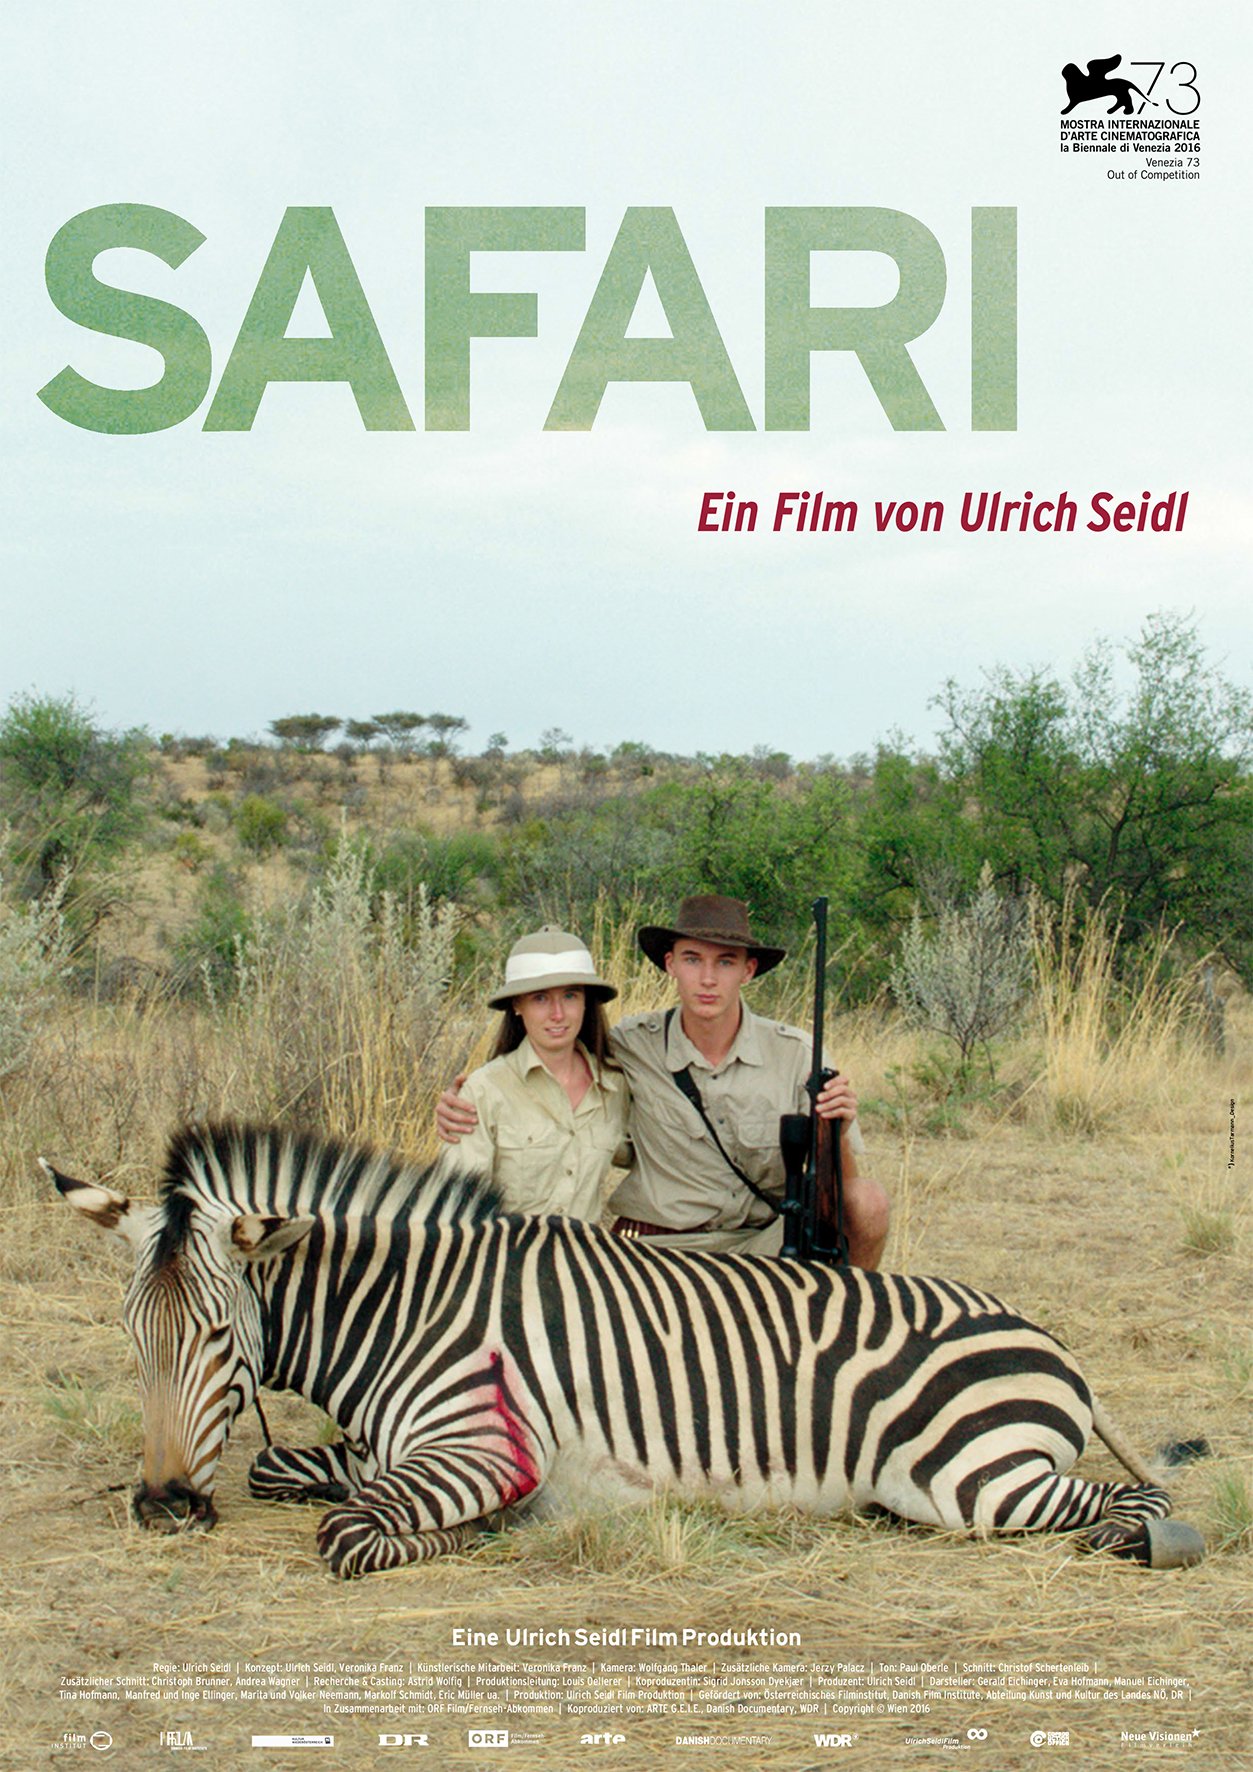 safari film resume detaille